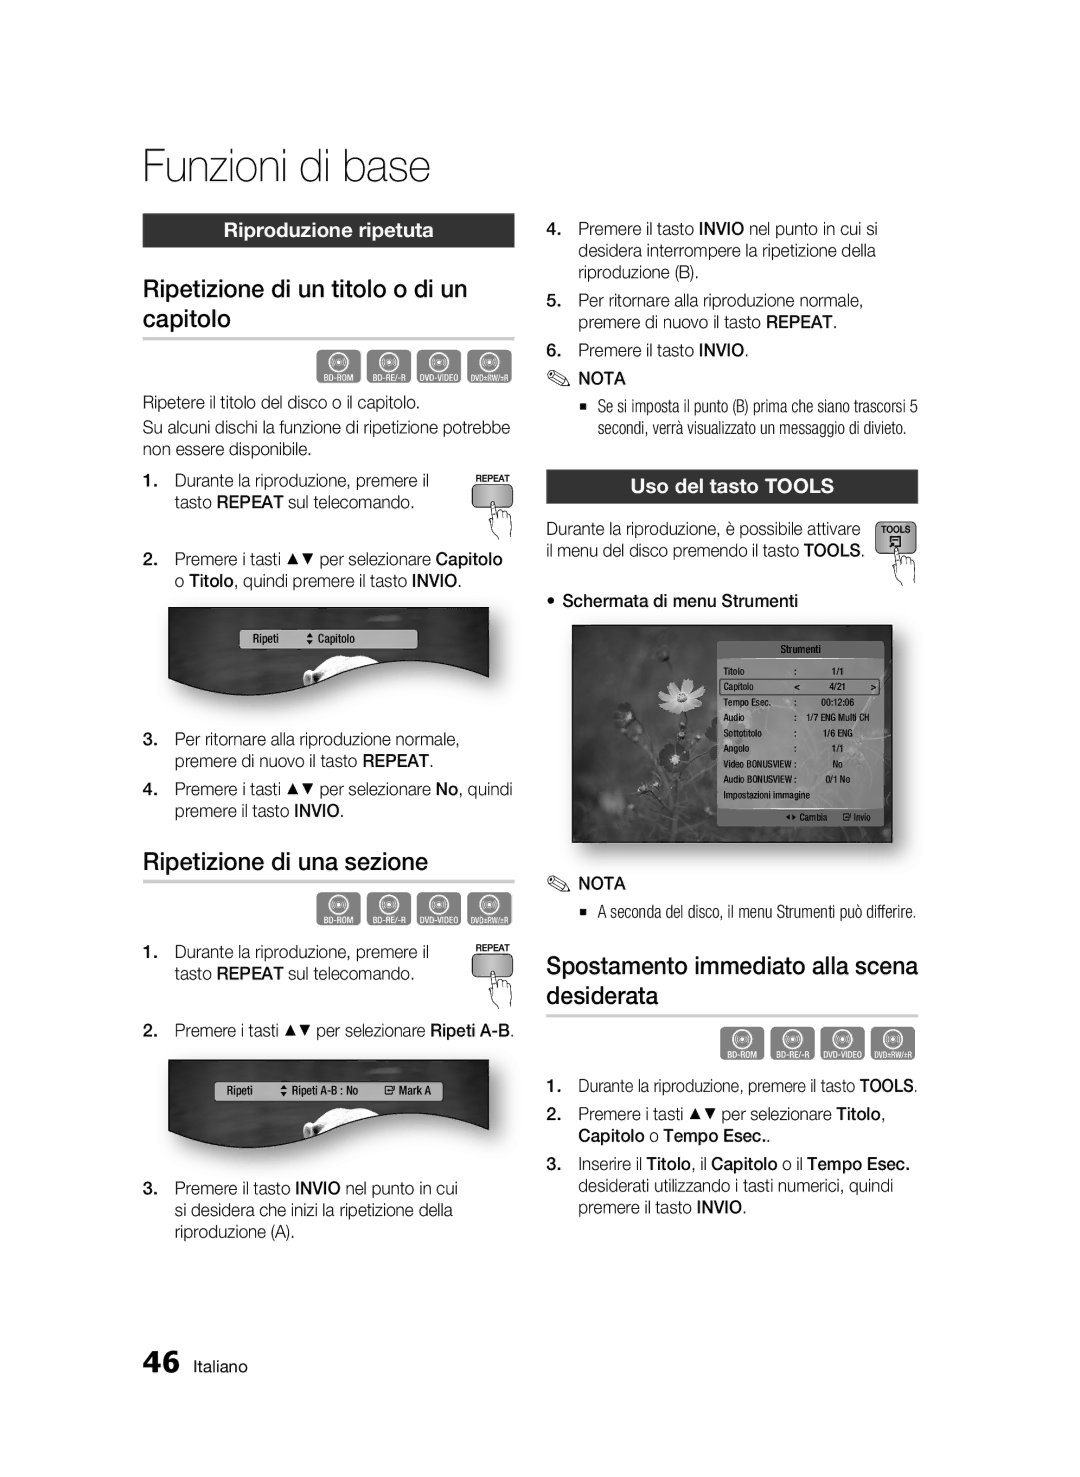 Samsung BD-C7500/EDC manual Ripetizione di un titolo o di un capitolo, Ripetizione di una sezione, Riproduzione ripetuta 